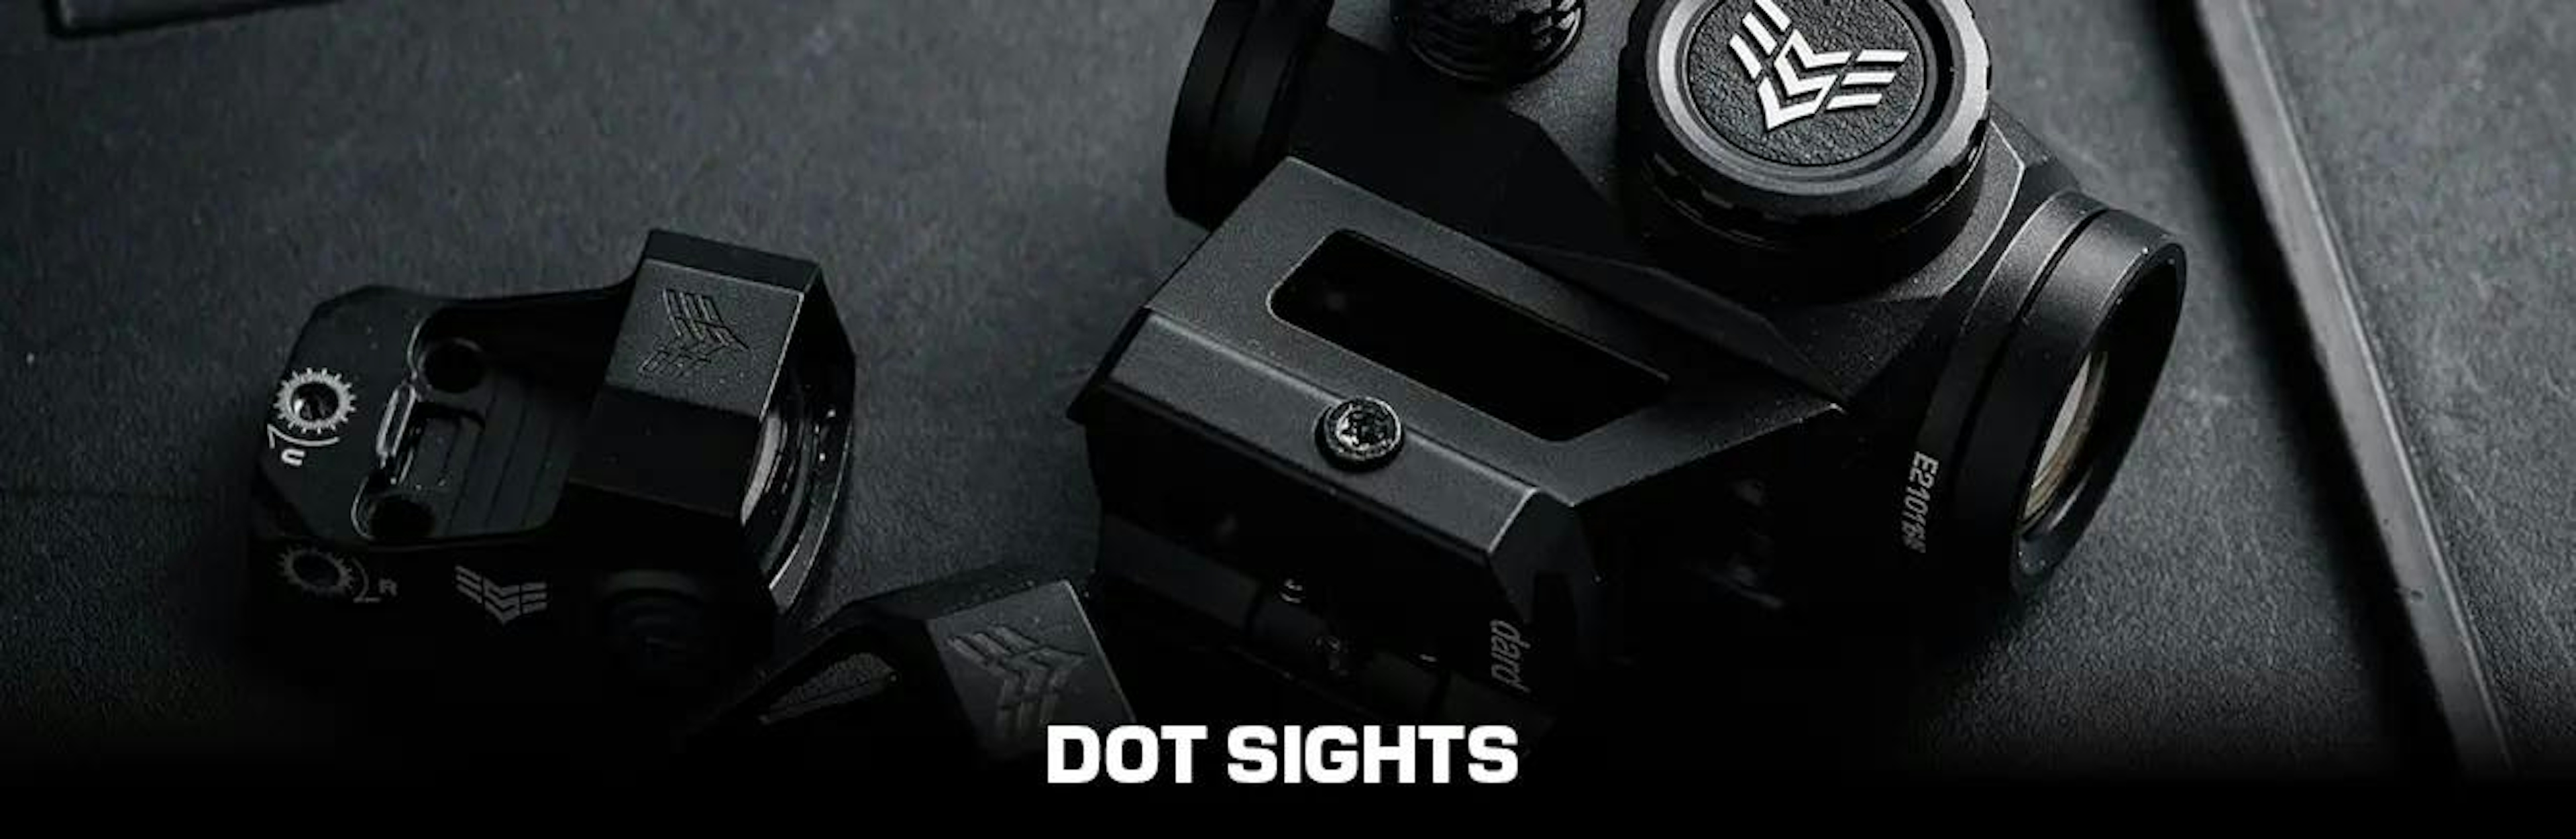 Dot Sights